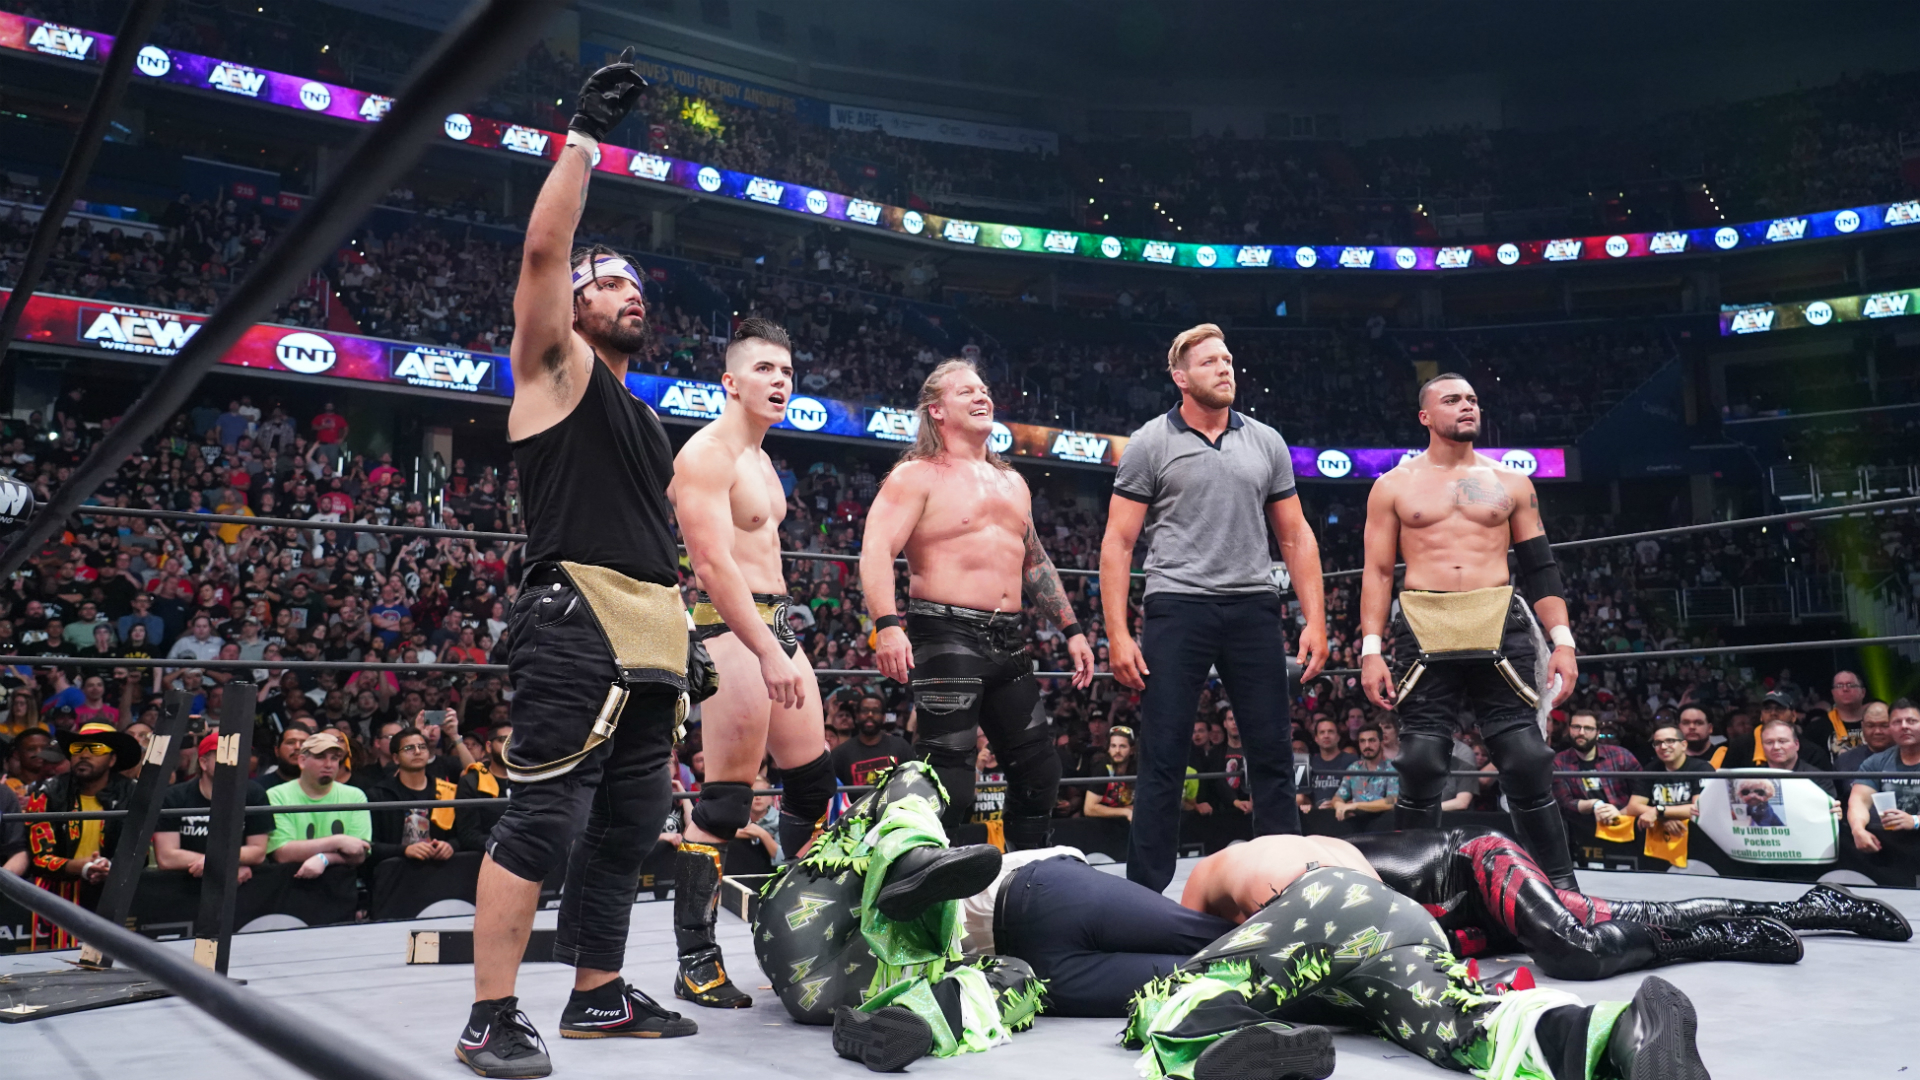 Flipboard: AEW Dynamite vs. WWE NXT: Wednesday Night Wars week 1's winners and losers1920 x 1080